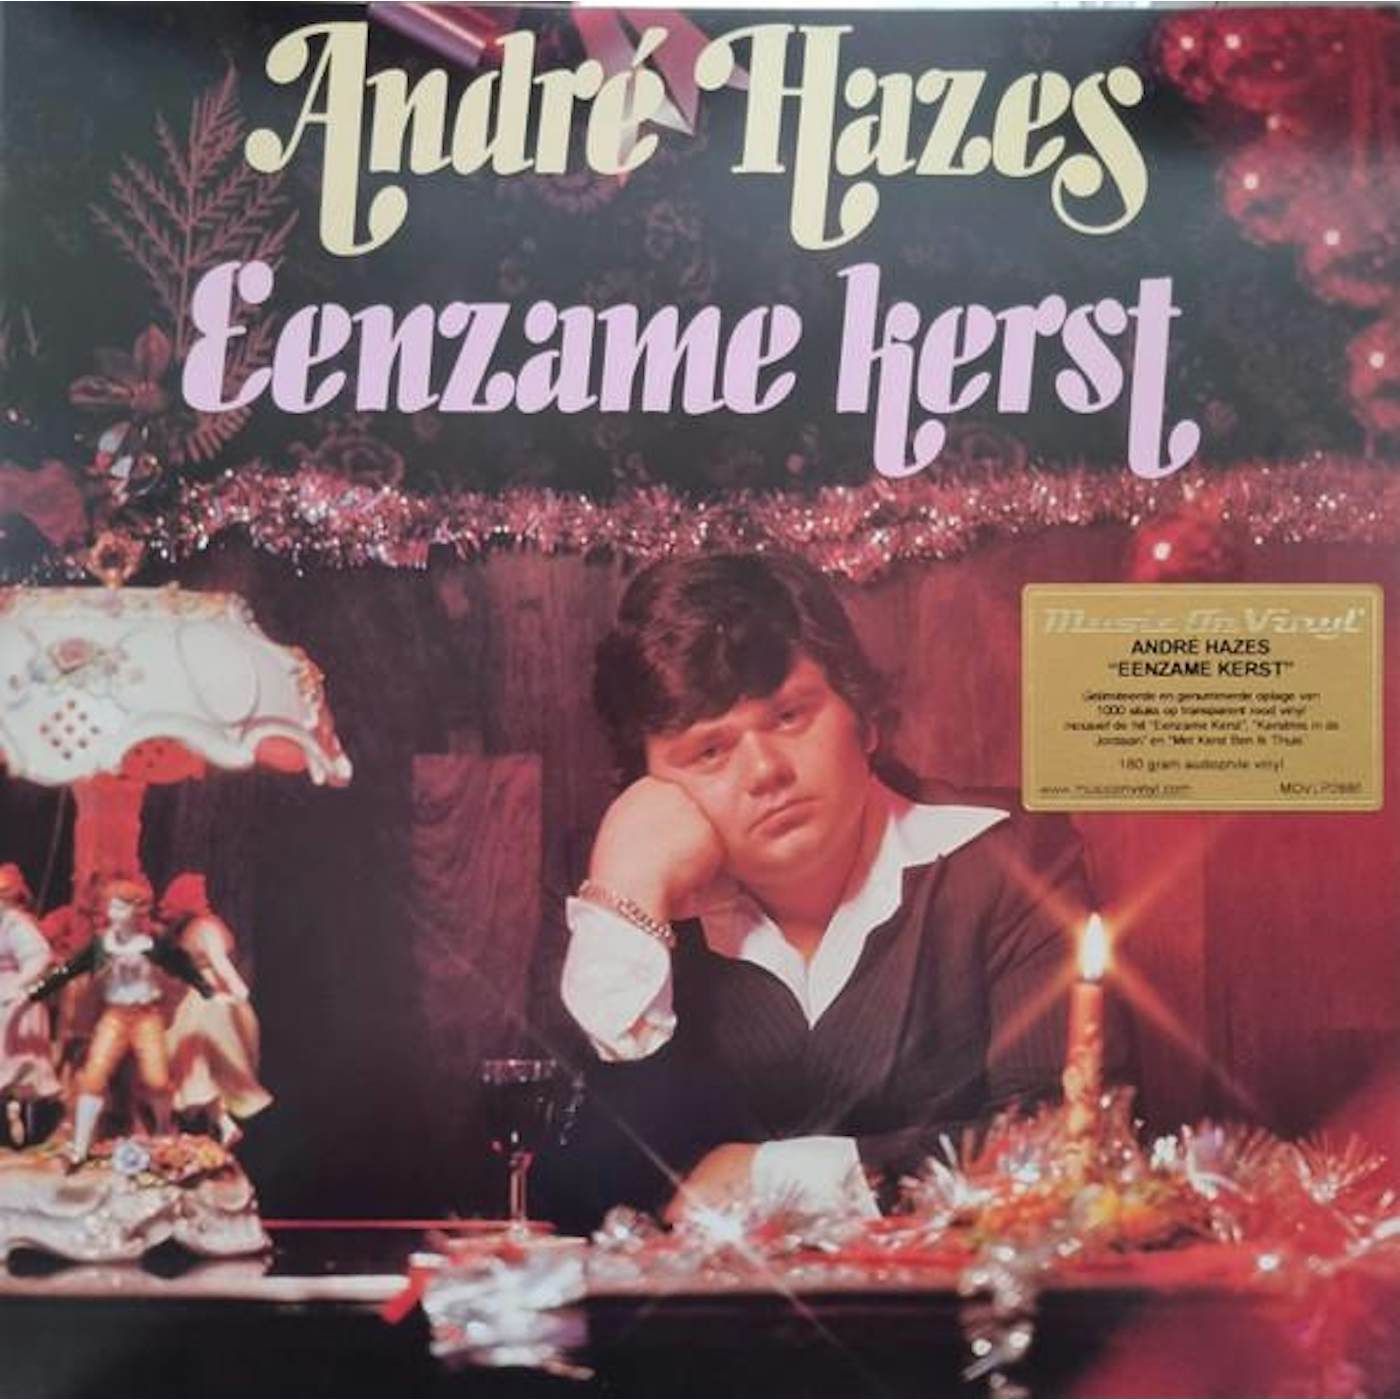 Andre Hazes Eenzame Kerst Vinyl Record